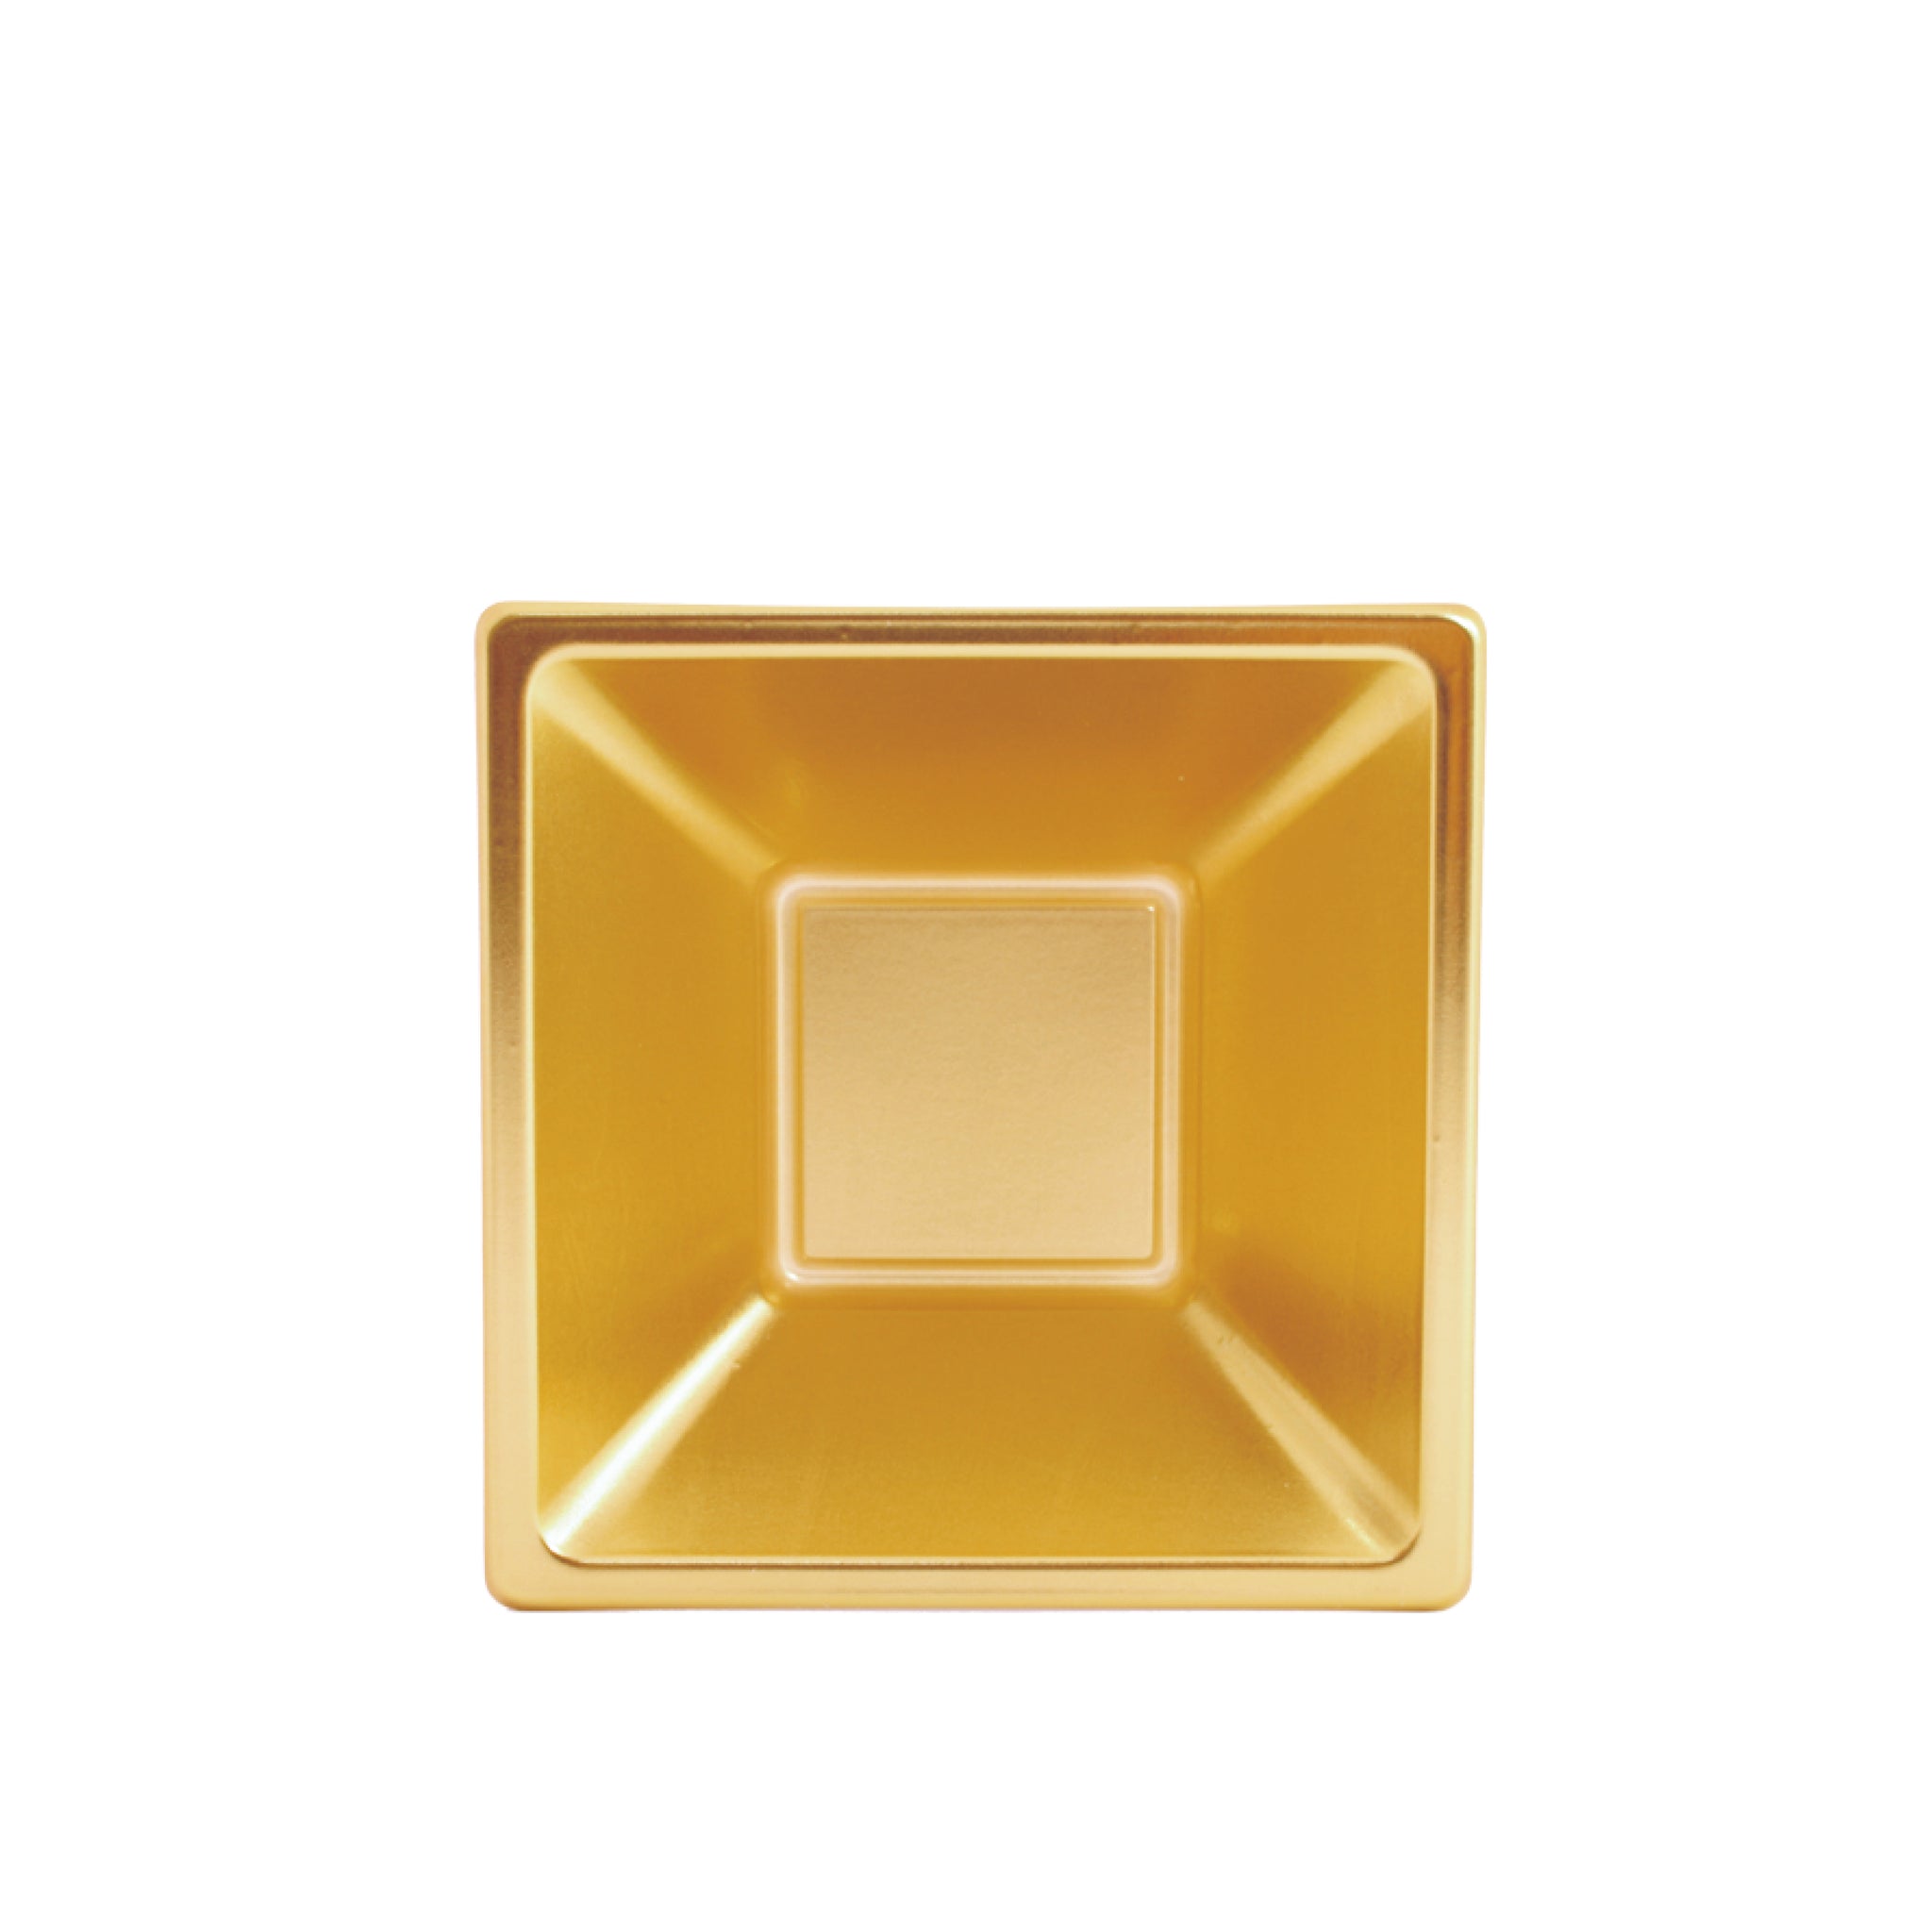 Ciotola quadrata metallica dorata / Confezione da 4 unità